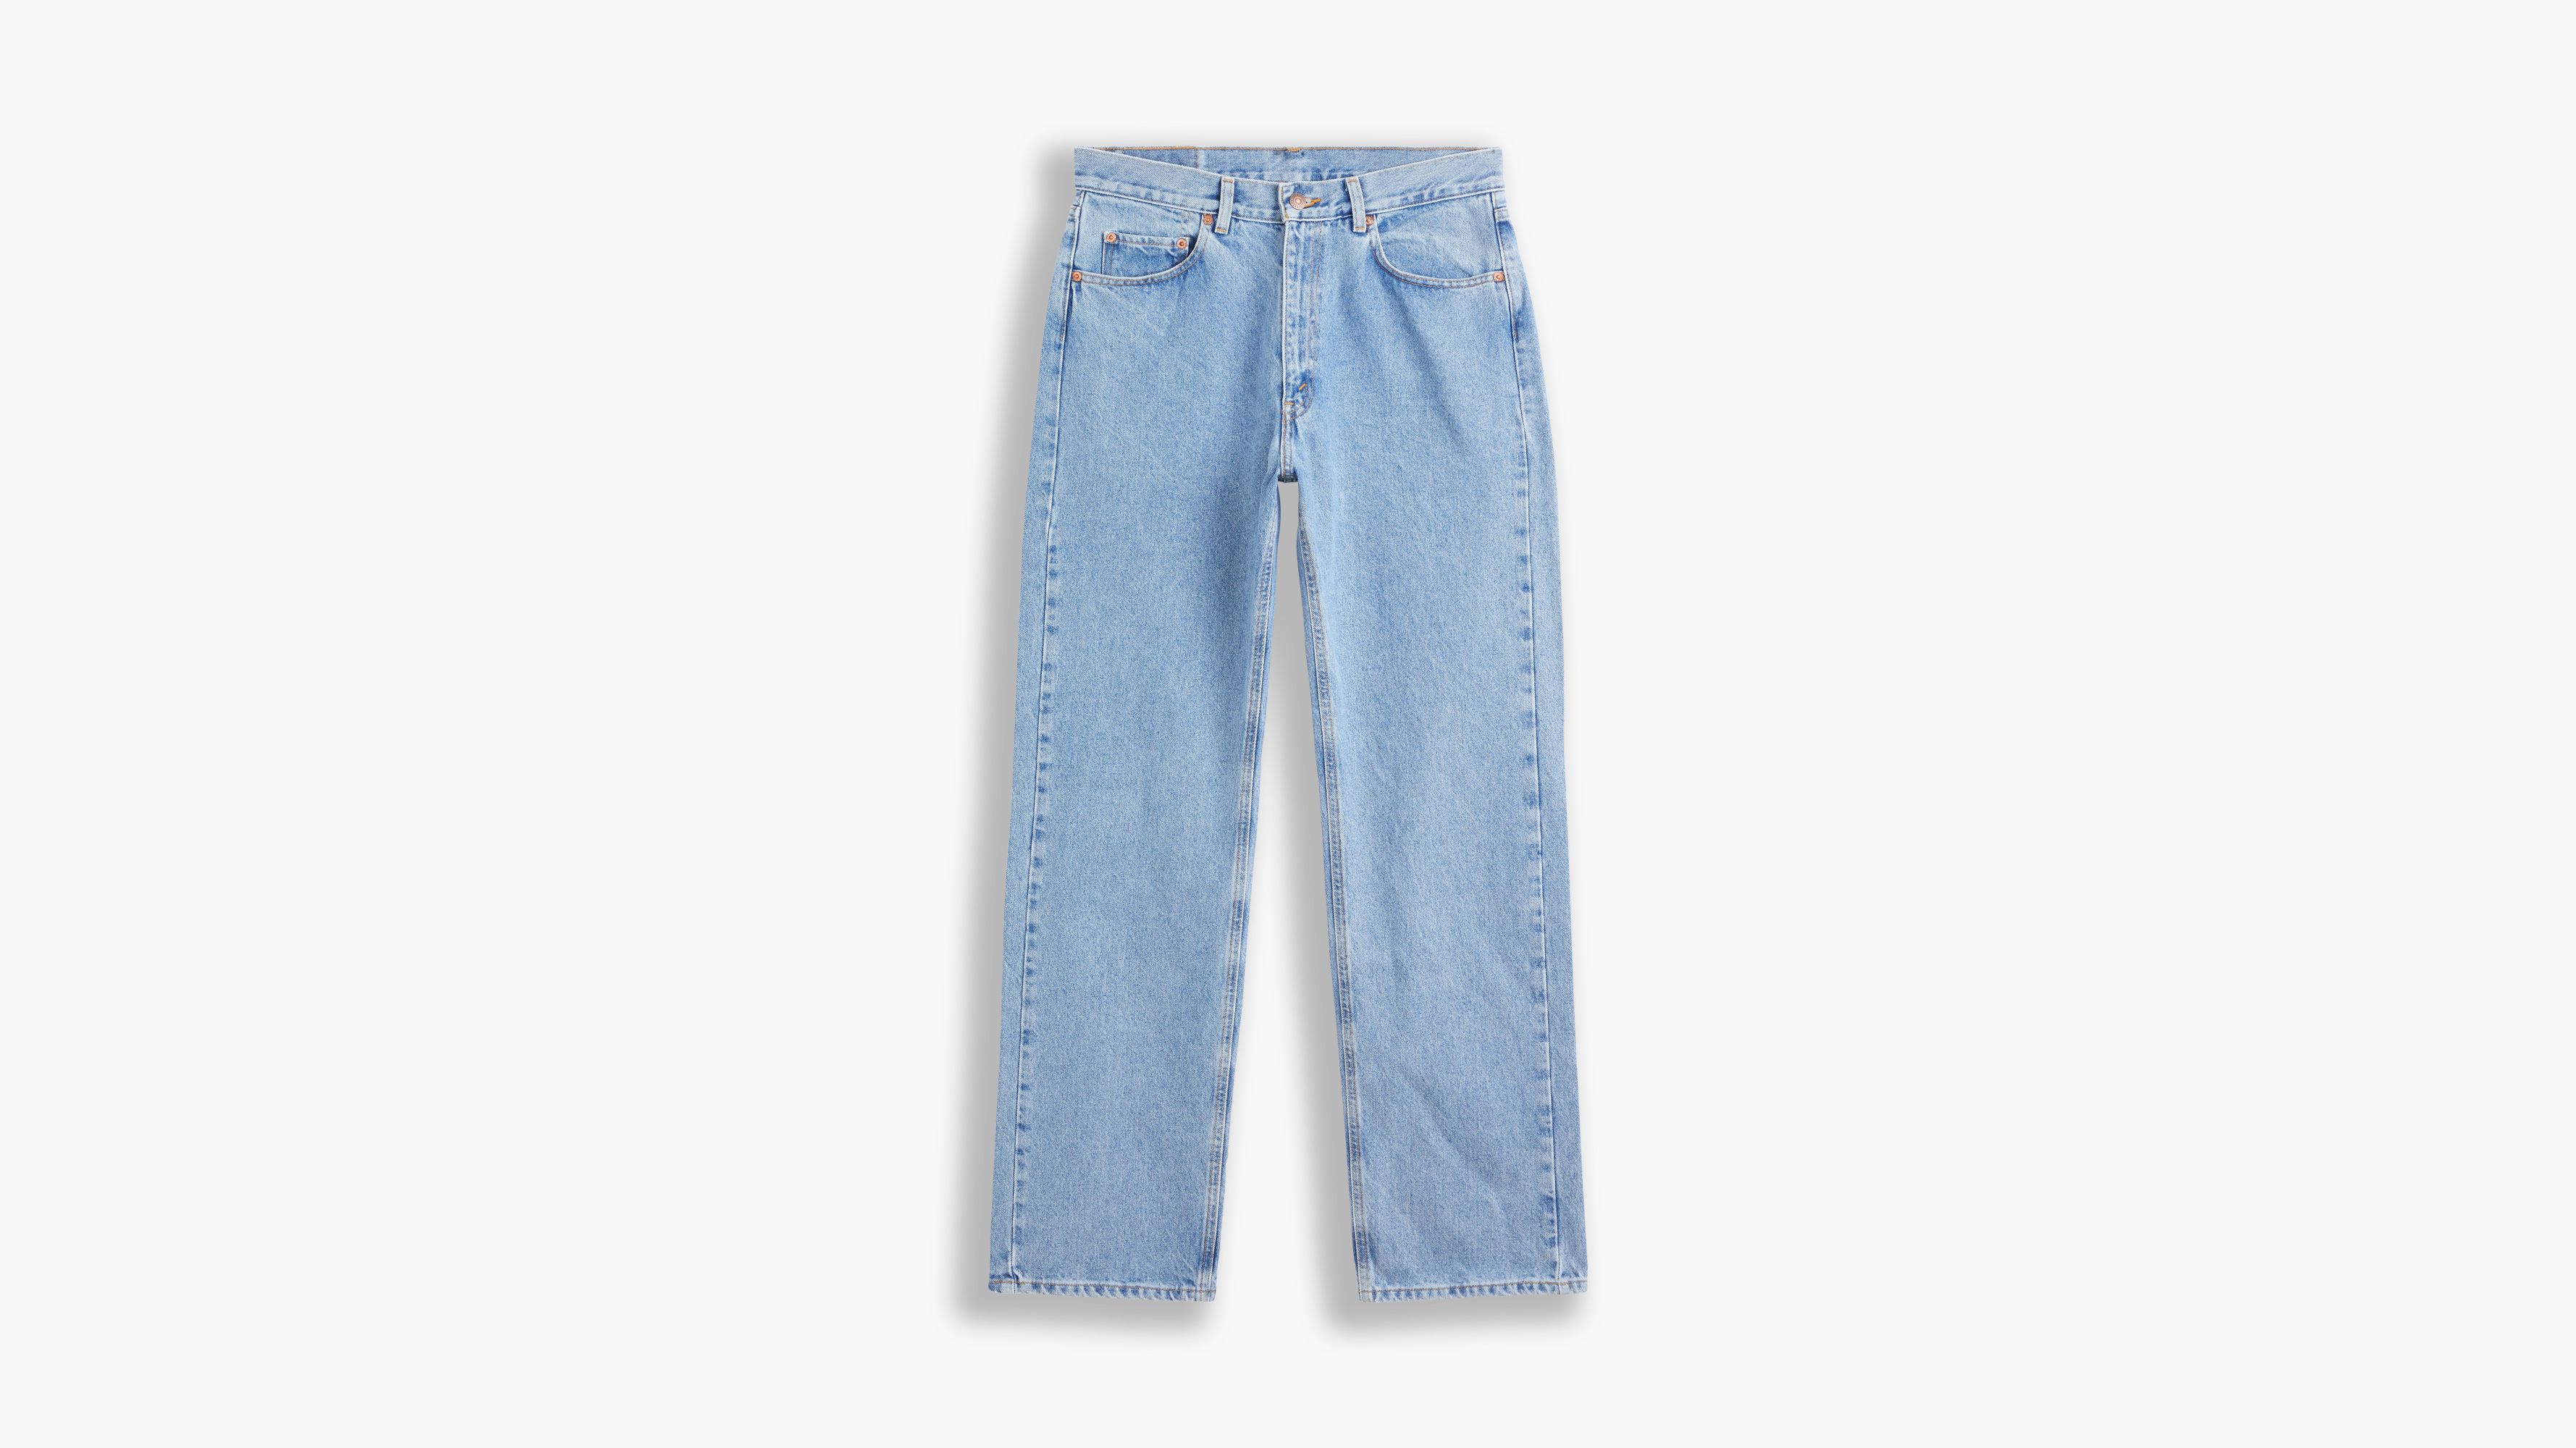 levis 554 jeans